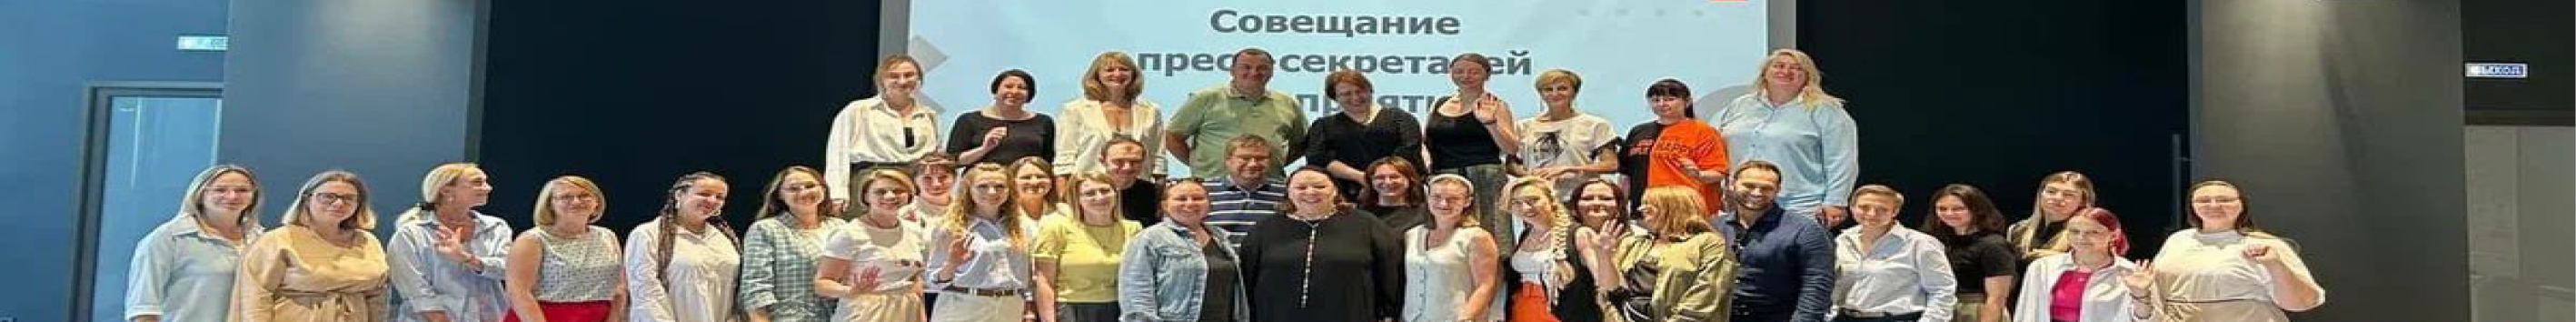 По инициативе пресс-службы Минпрома состоялось первое установочное совещание представителей  пресс-служб и PR-отделов предприятий Нижегородской области